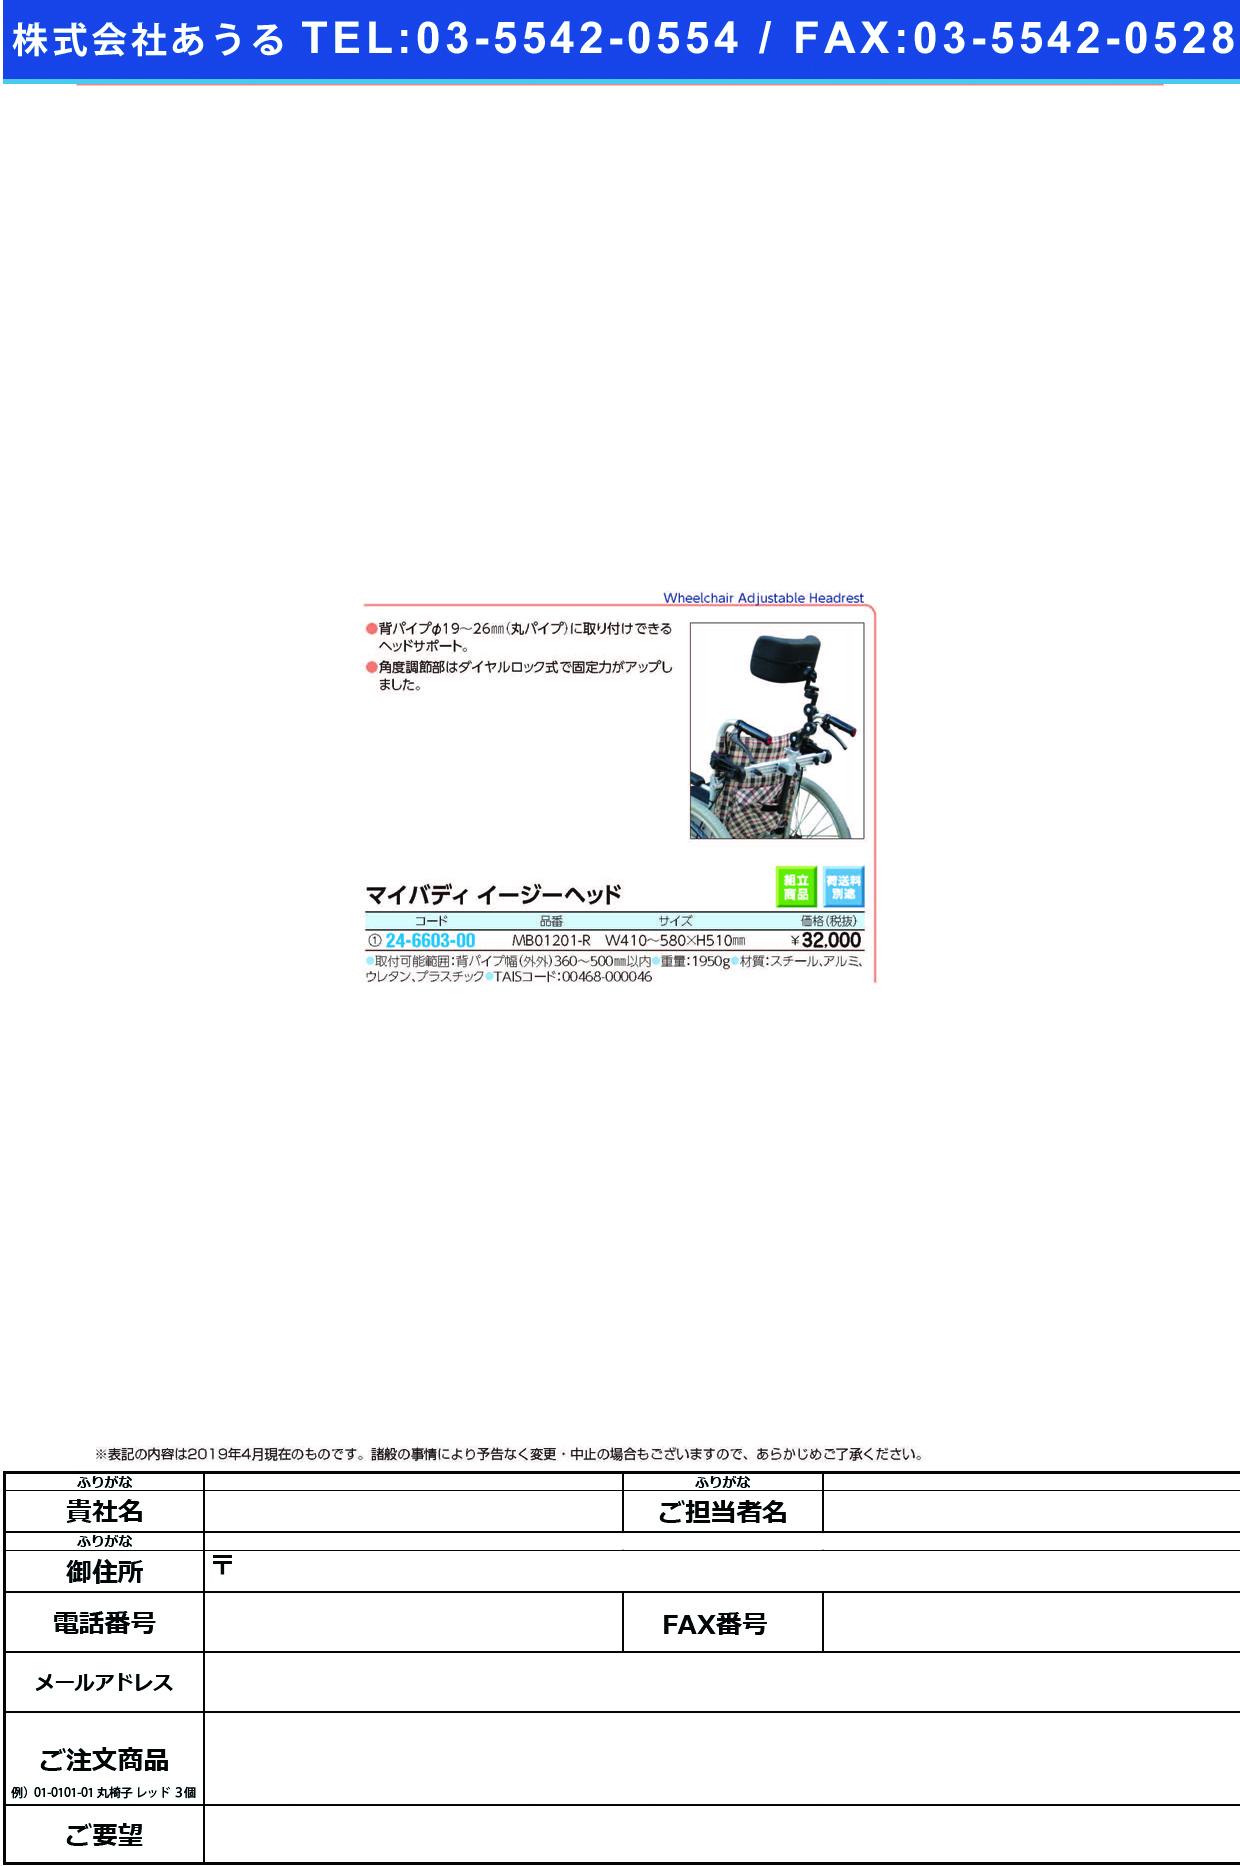 (24-6603-00)マイバディイージーヘッド MB01201-R ﾏｲﾊﾞﾃﾞｨｲｰｼﾞｰﾍｯﾄﾞ【1個単位】【2019年カタログ商品】